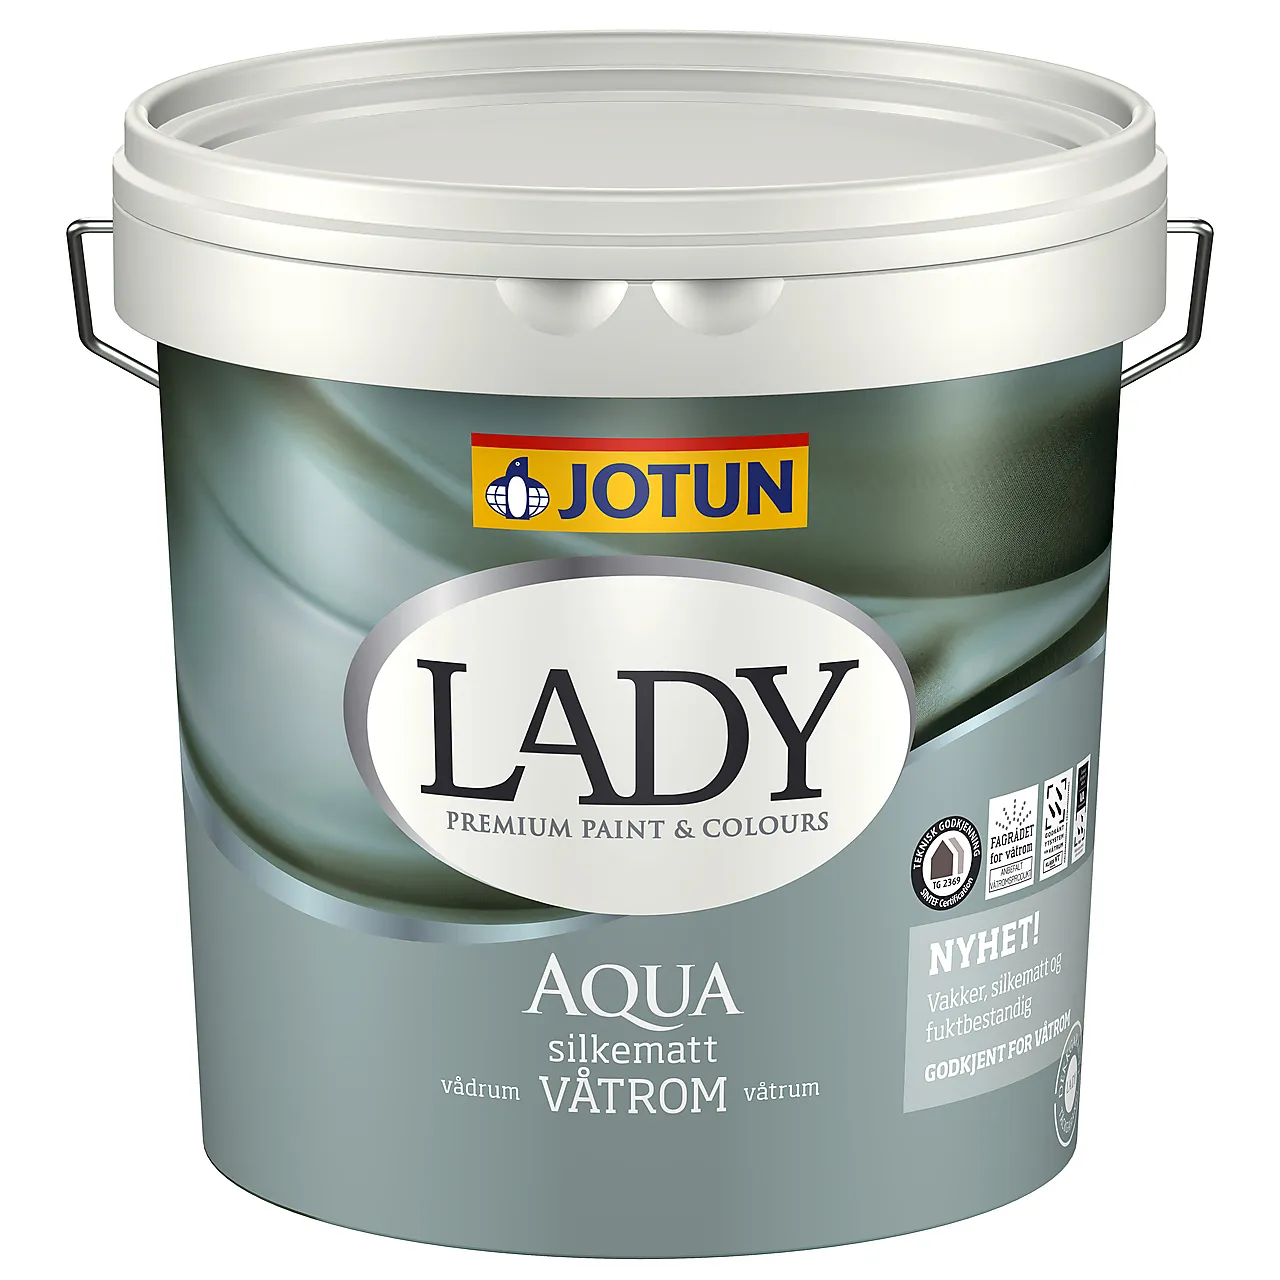 Lady Aqua c-base 2,7 liter